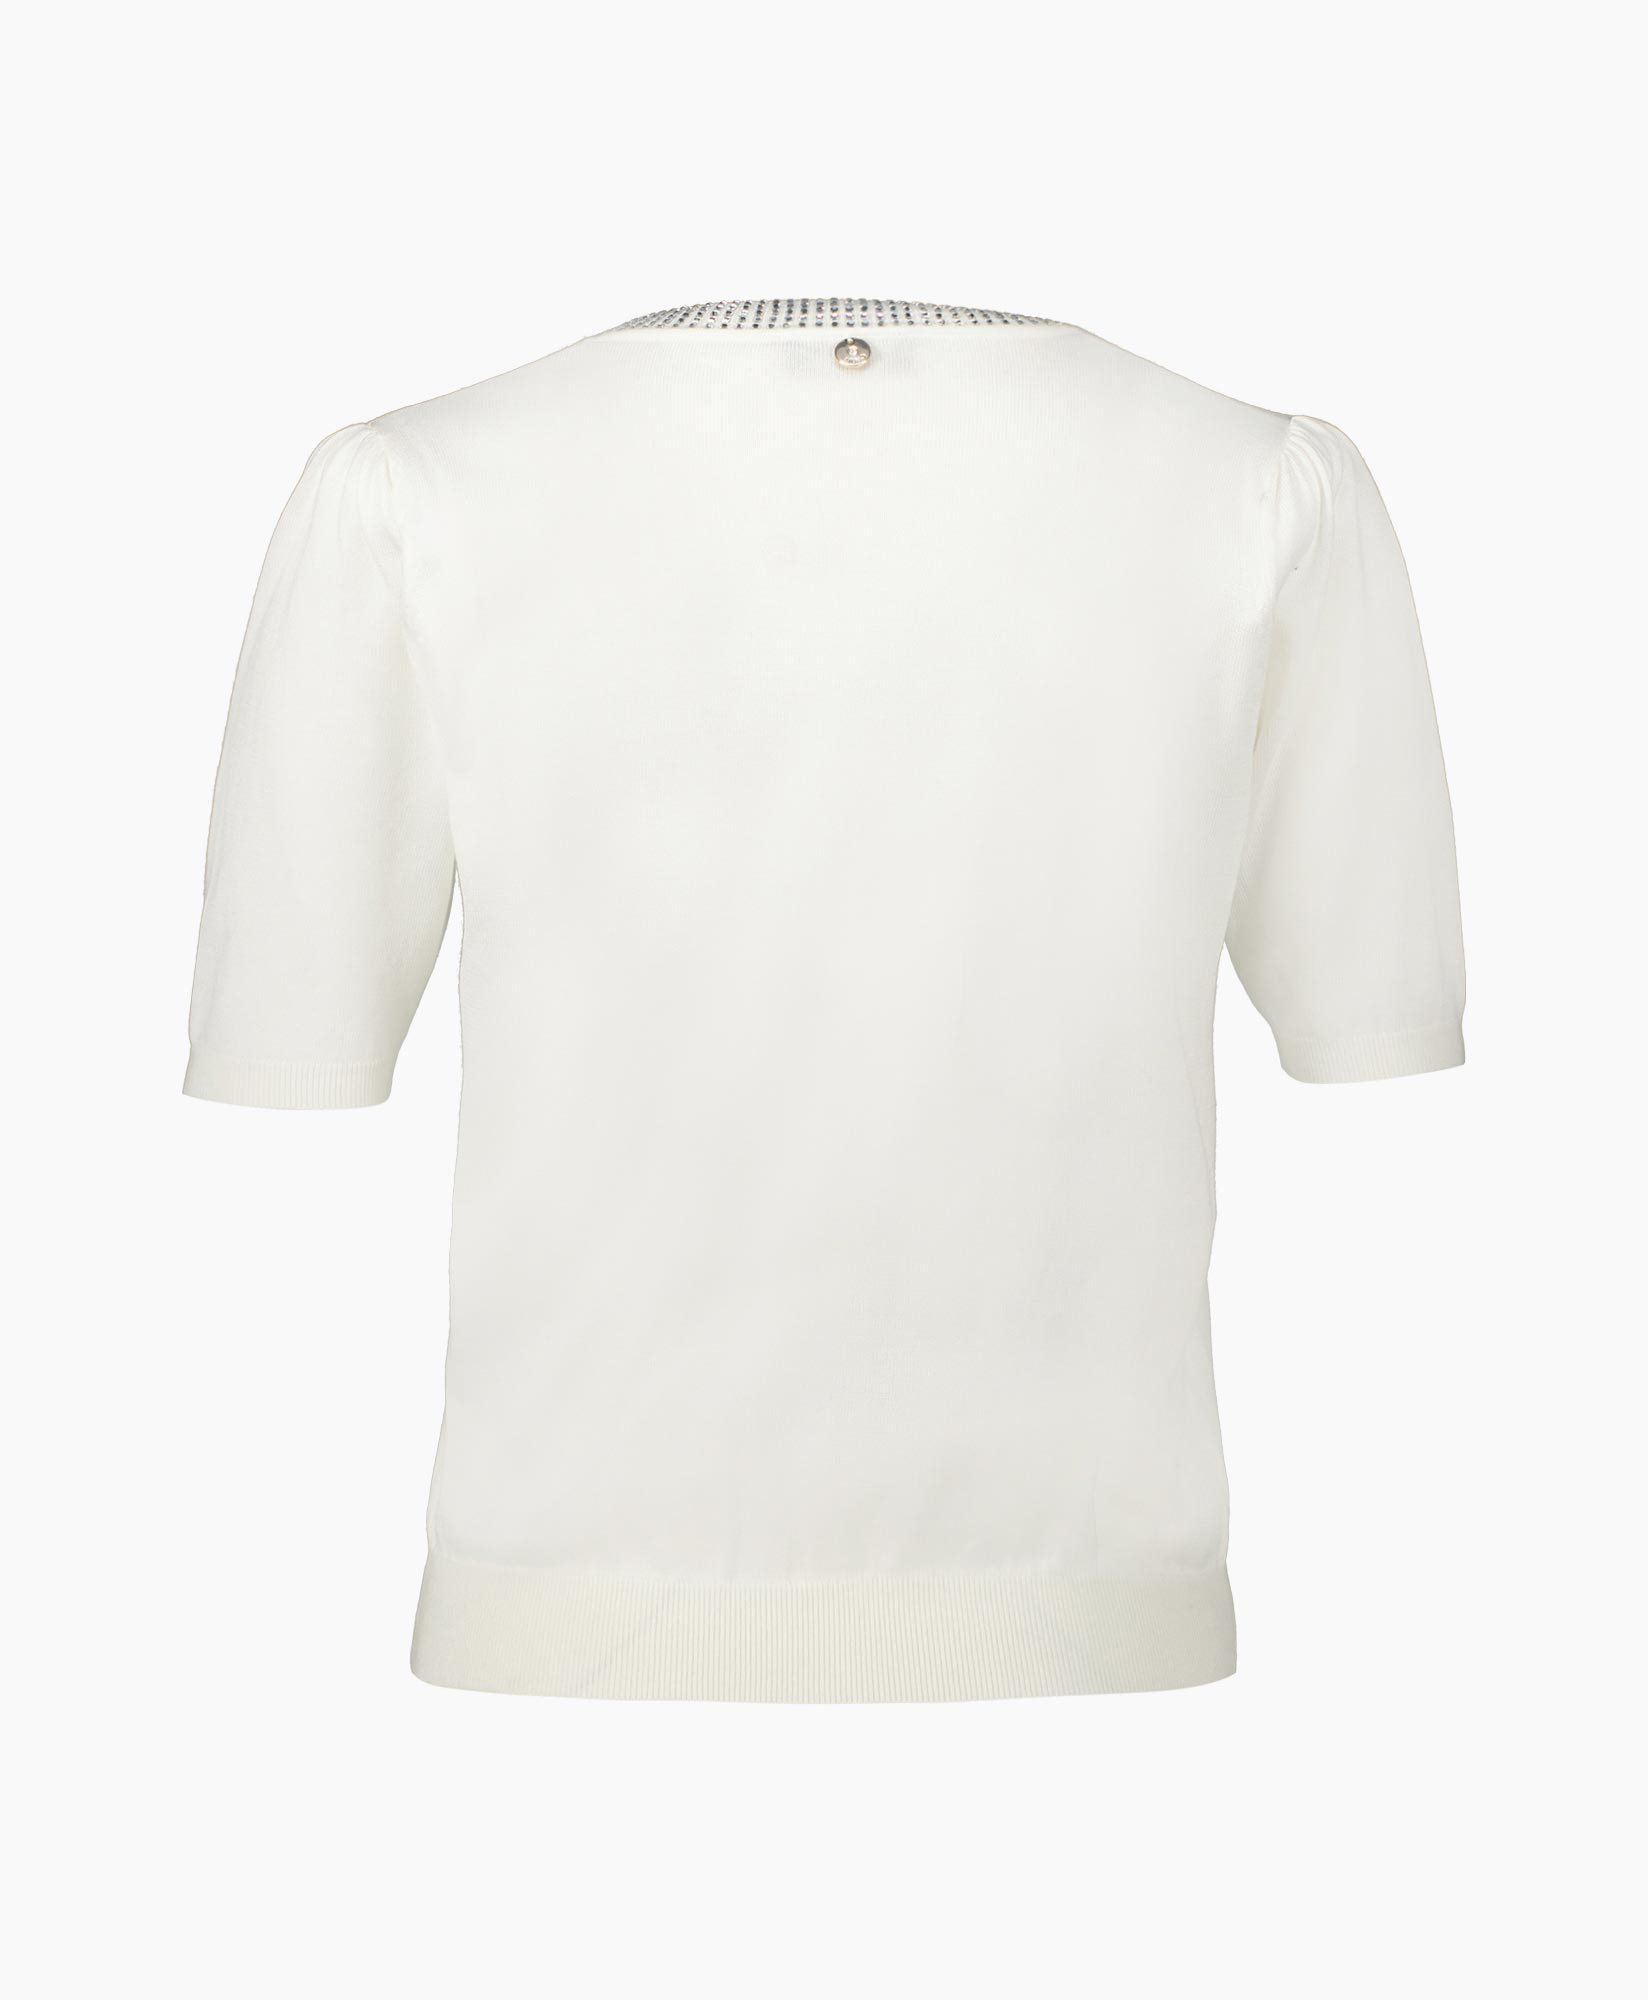 Liu Jo Top & T-shirt Ca3070ma48n Wit